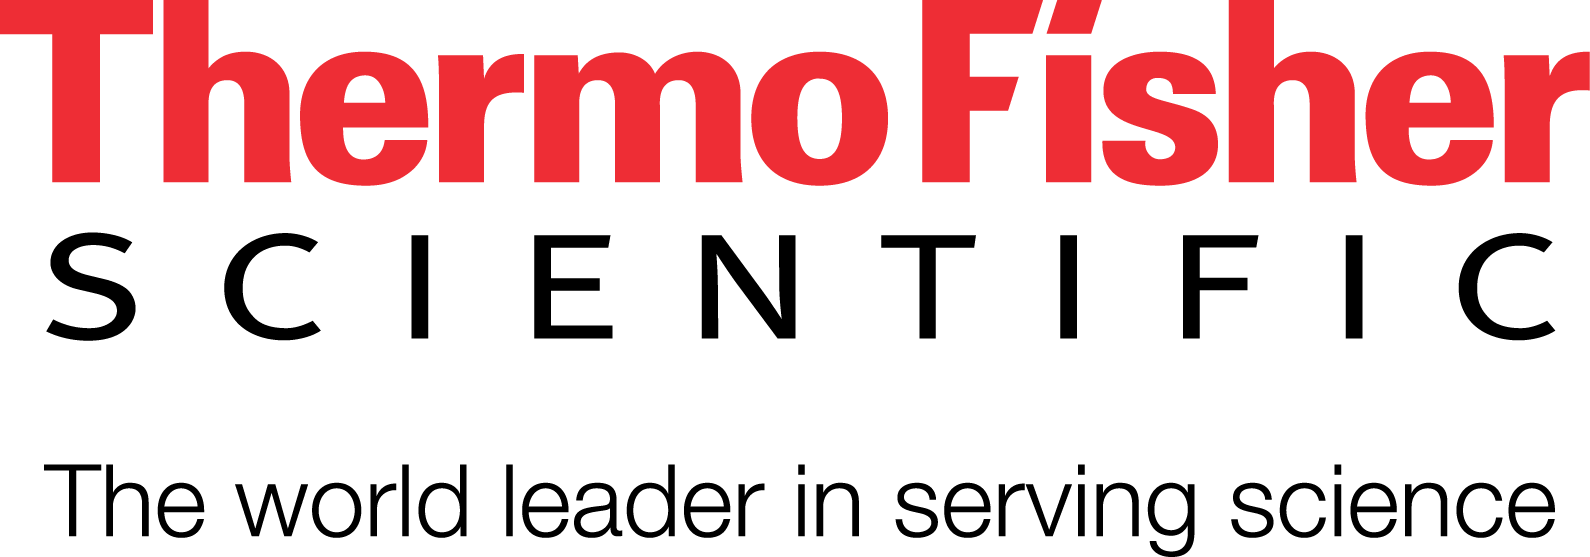 Thermo Fisher Scientific - Tagline logo